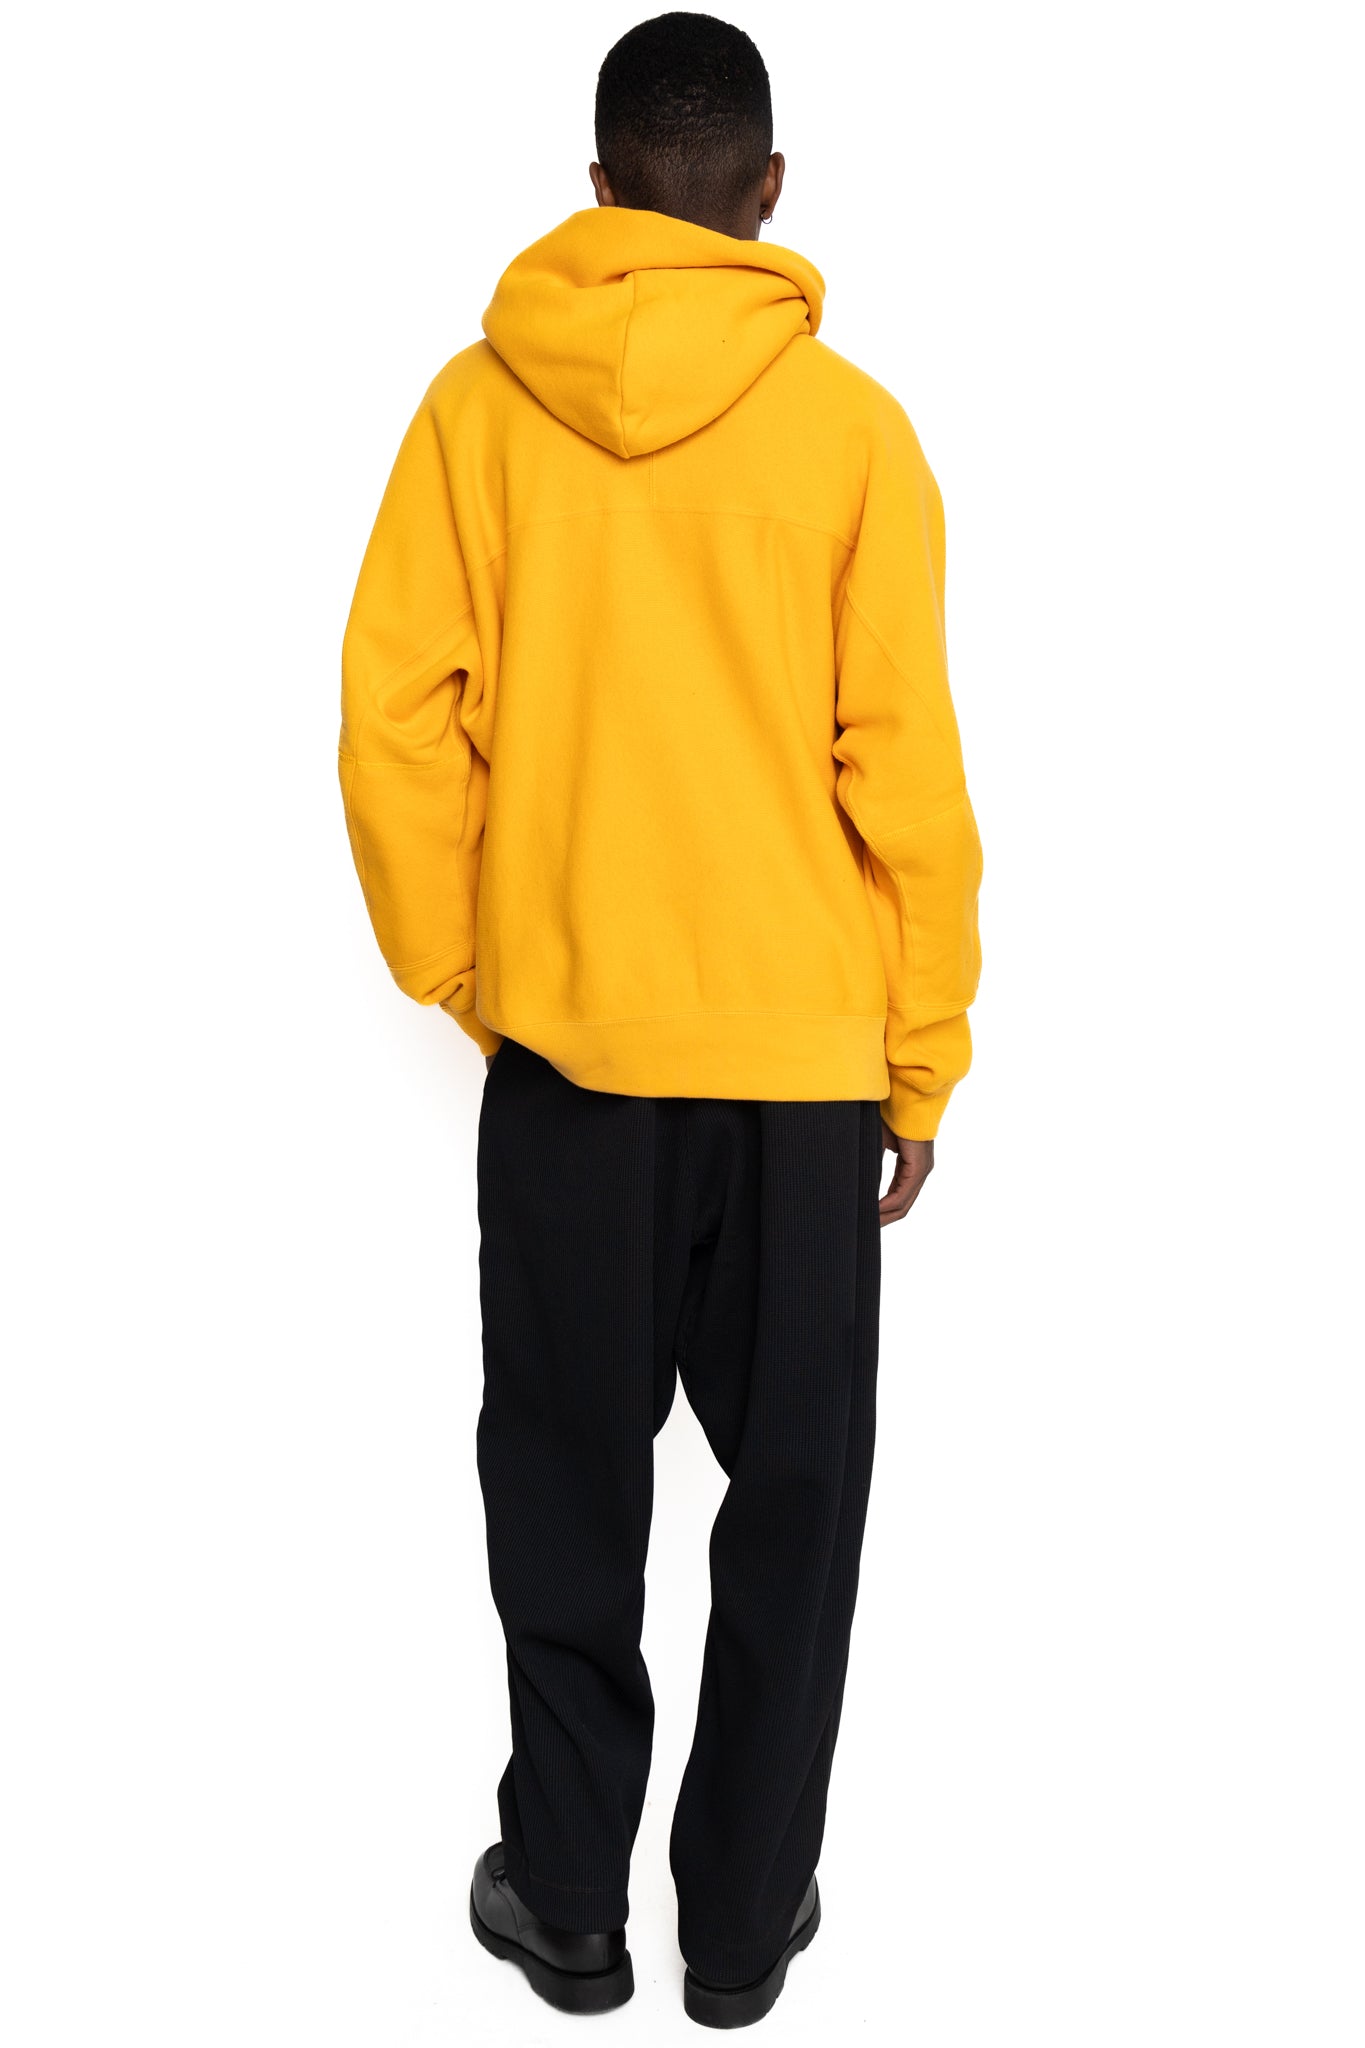 N. HOOLYWOOD x Champion Hooded Sweatshirt - Mustard